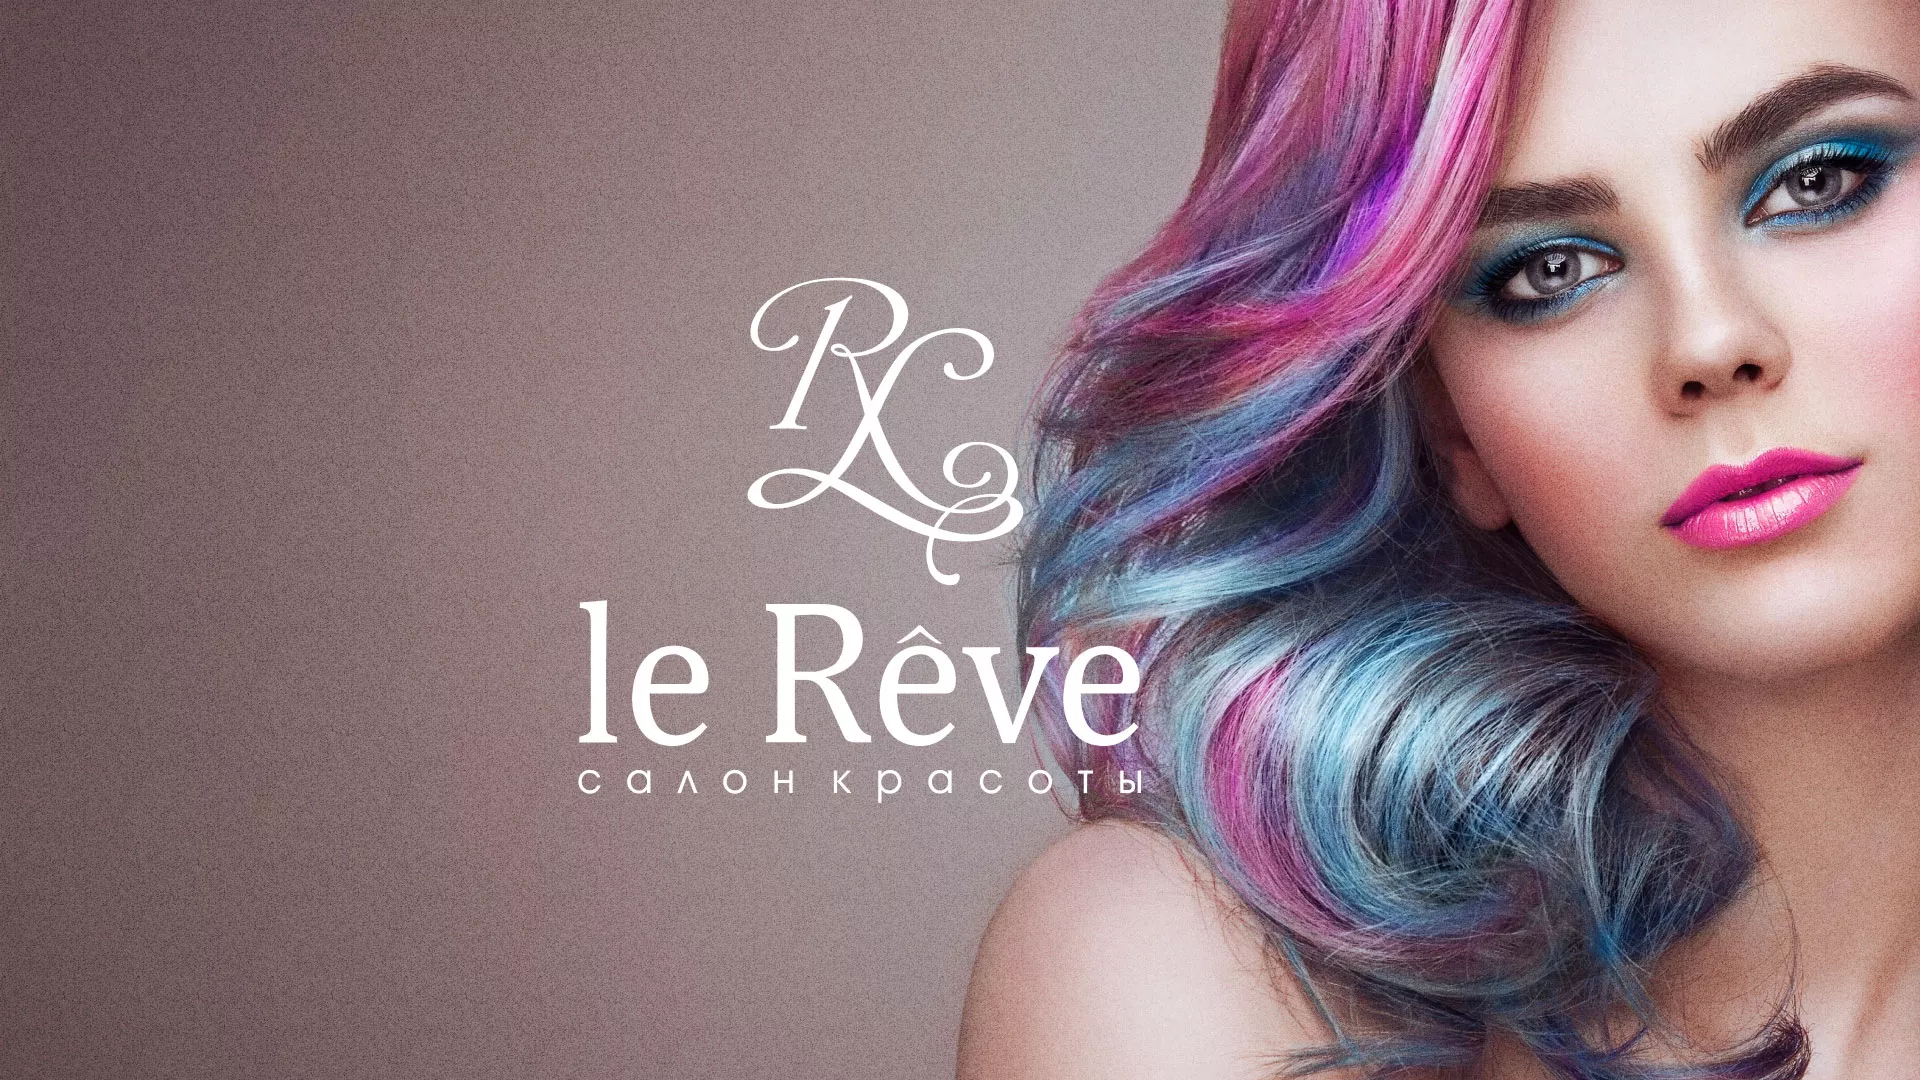 Создание сайта для салона красоты «Le Reve» в Усть-Куте